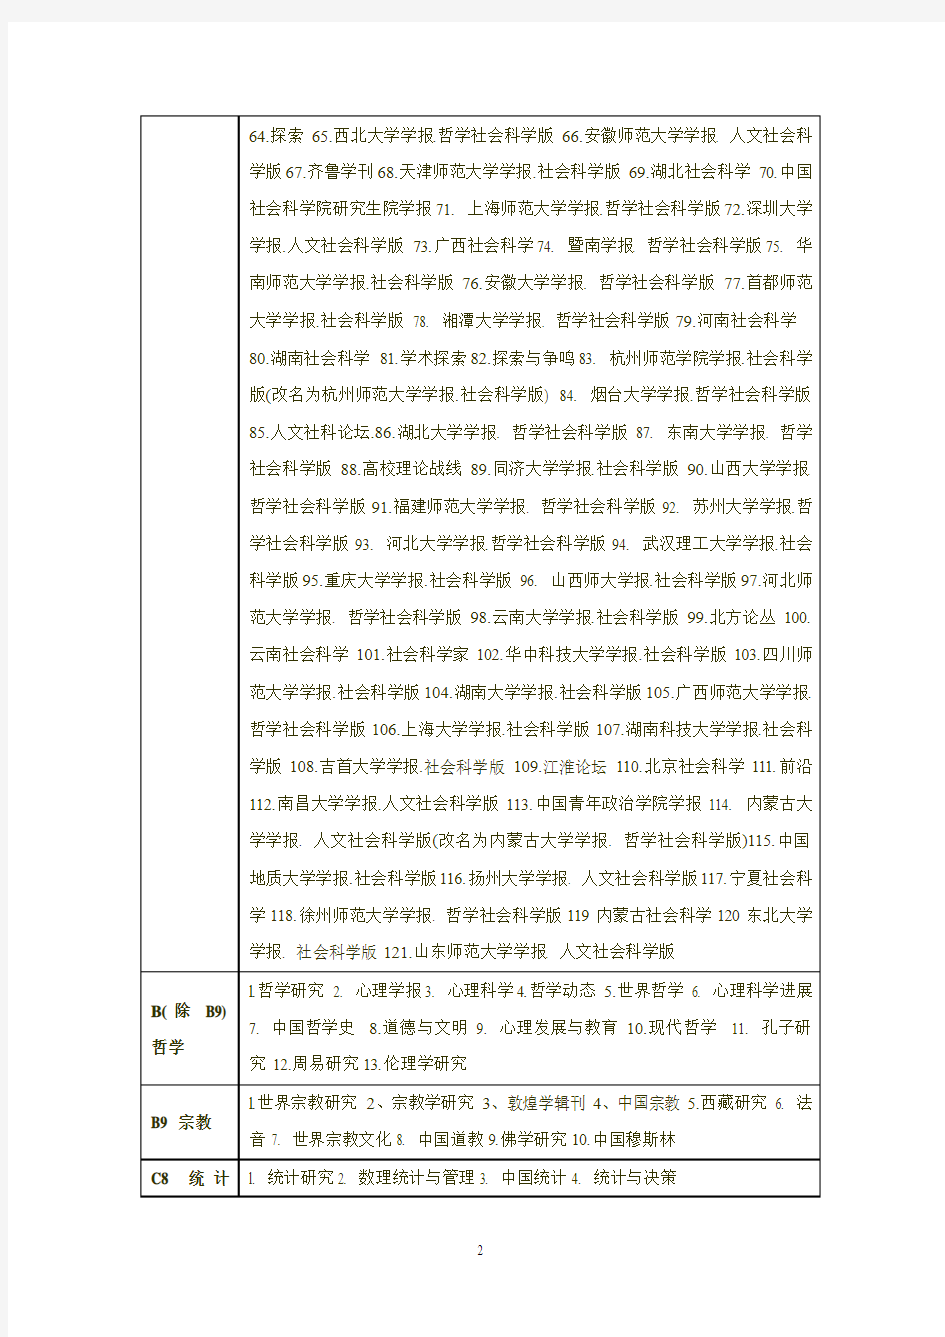 2012年最新中文核心期刊目录(北大图书馆版)